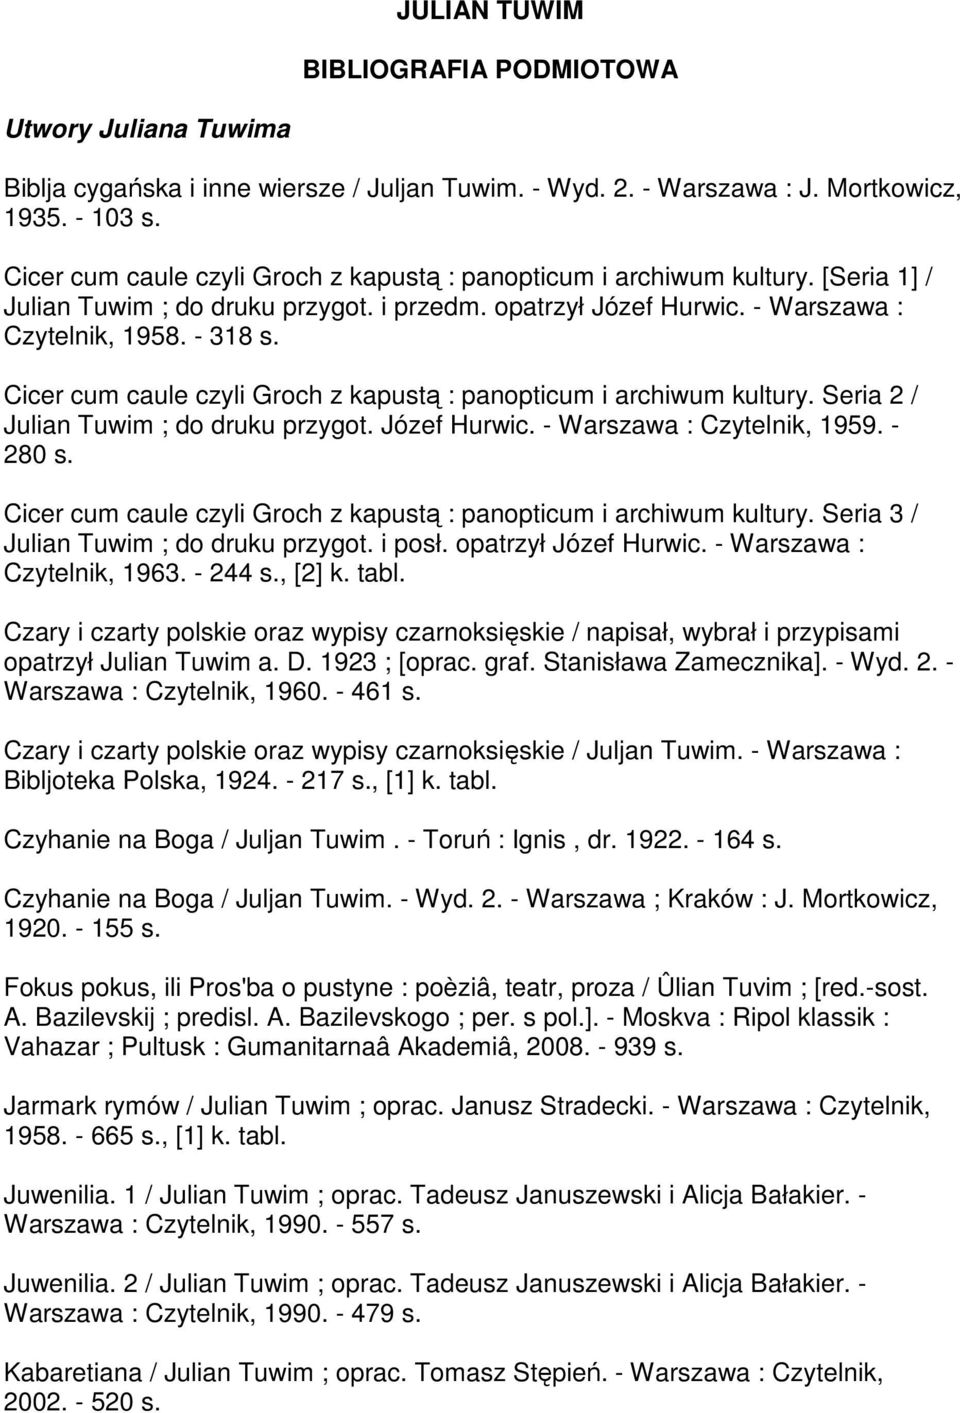 Cicer cum caule czyli Groch z kapustą : panopticum i archiwum kultury. Seria 2 / Julian Tuwim ; do druku przygot. Józef Hurwic. - Warszawa : Czytelnik, 1959. - 280 s.